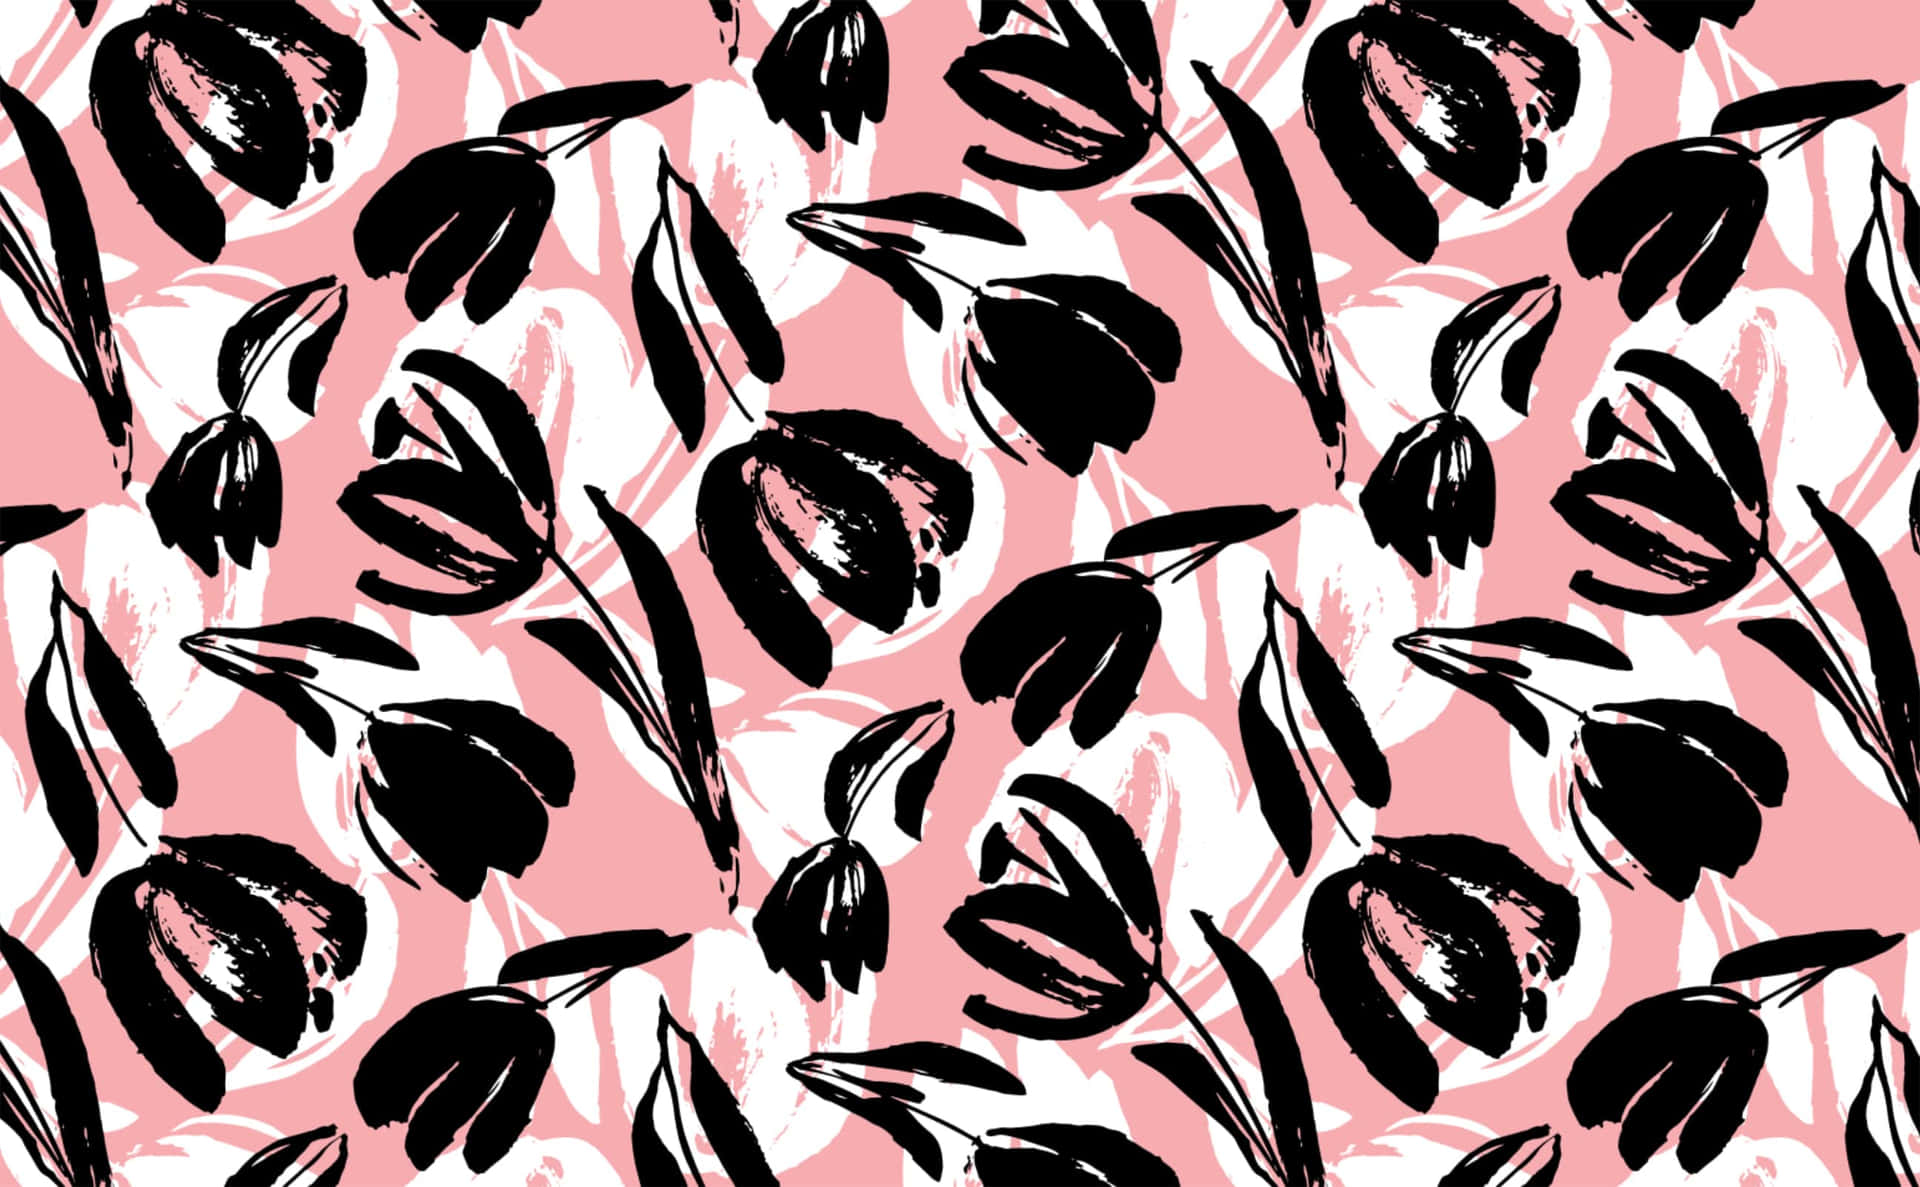 Abstraktion af farve i pink, sort og hvid Wallpaper